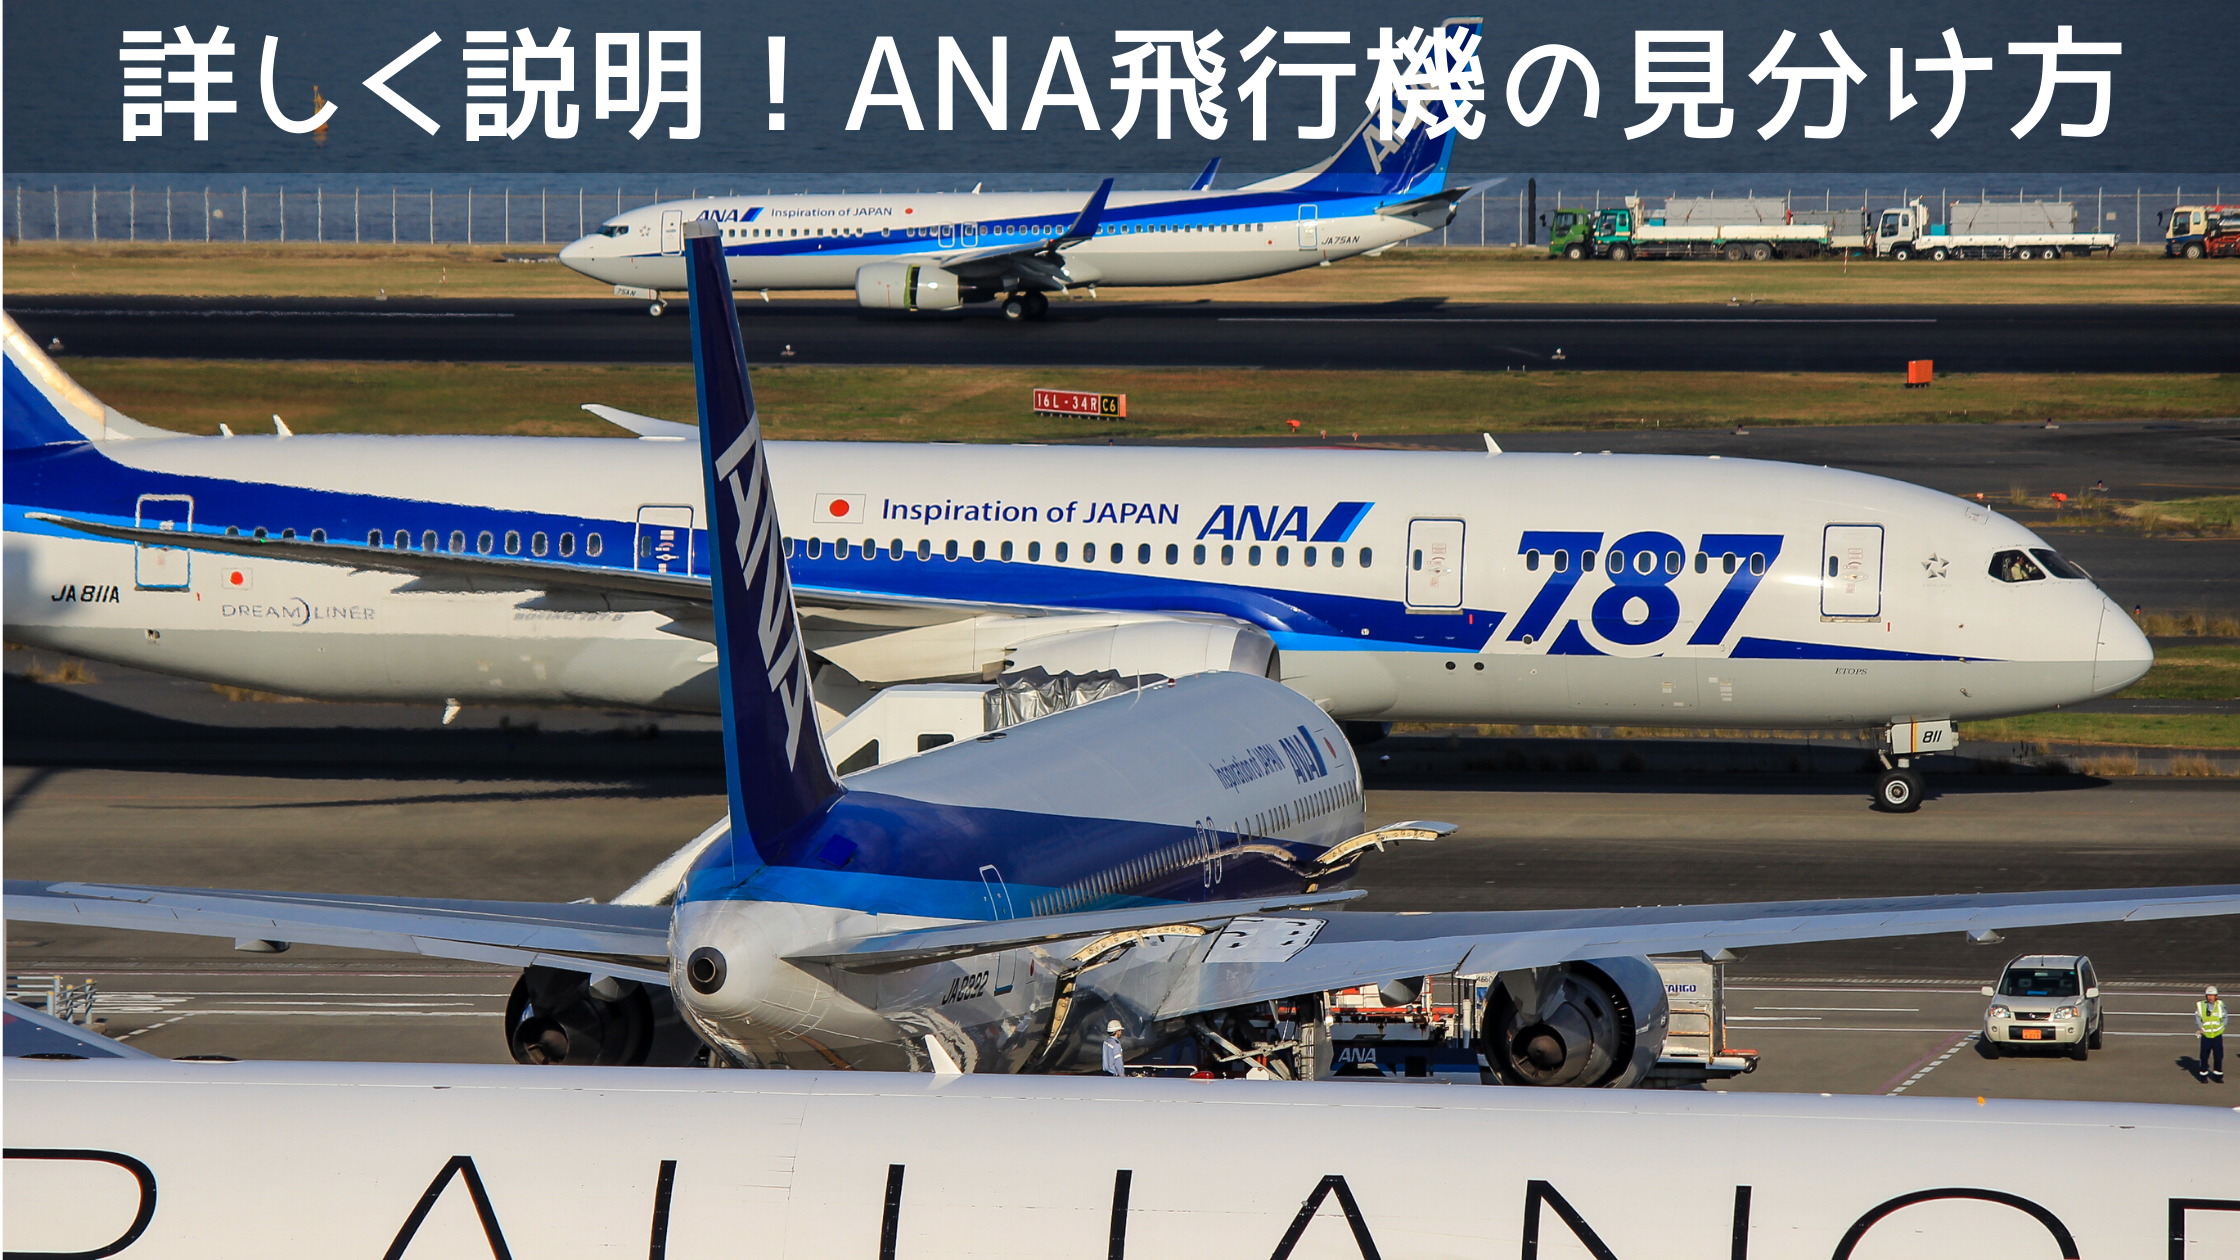 21年最新版 飛行機の見分け方を詳しく説明 全日本空輸 Ana 全13機種の運用機種で比較 シテイリョウコウ